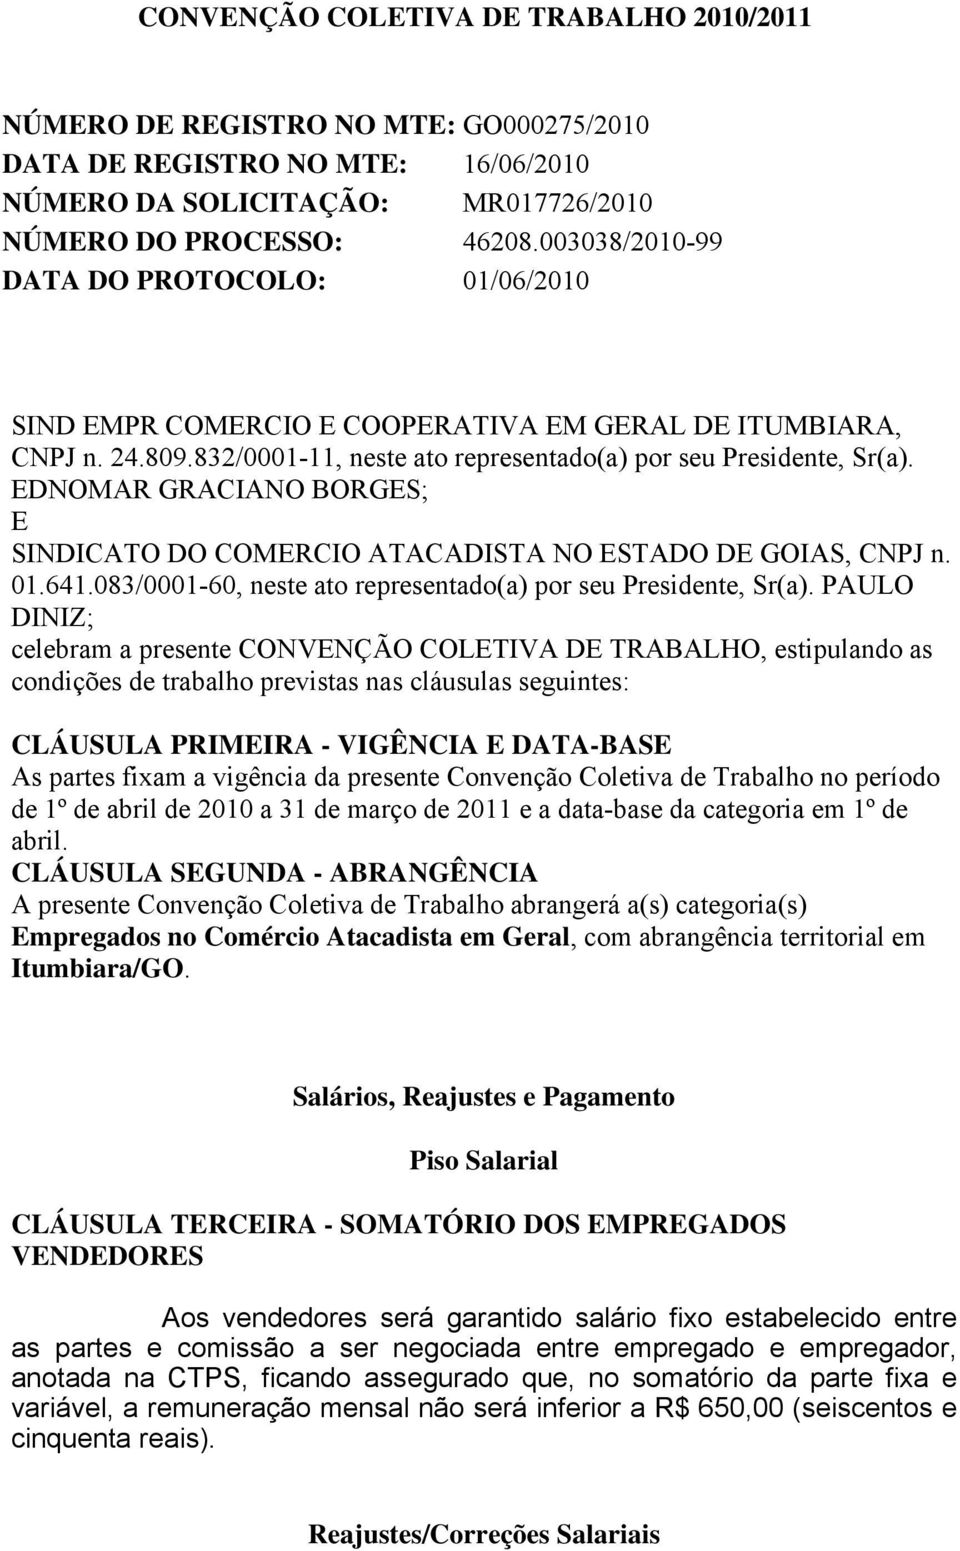 EDNOMAR GRACIANO BORGES; E SINDICATO DO COMERCIO ATACADISTA NO ESTADO DE GOIAS, CNPJ n. 01.641.083/0001-60, neste ato representado(a) por seu Presidente, Sr(a).